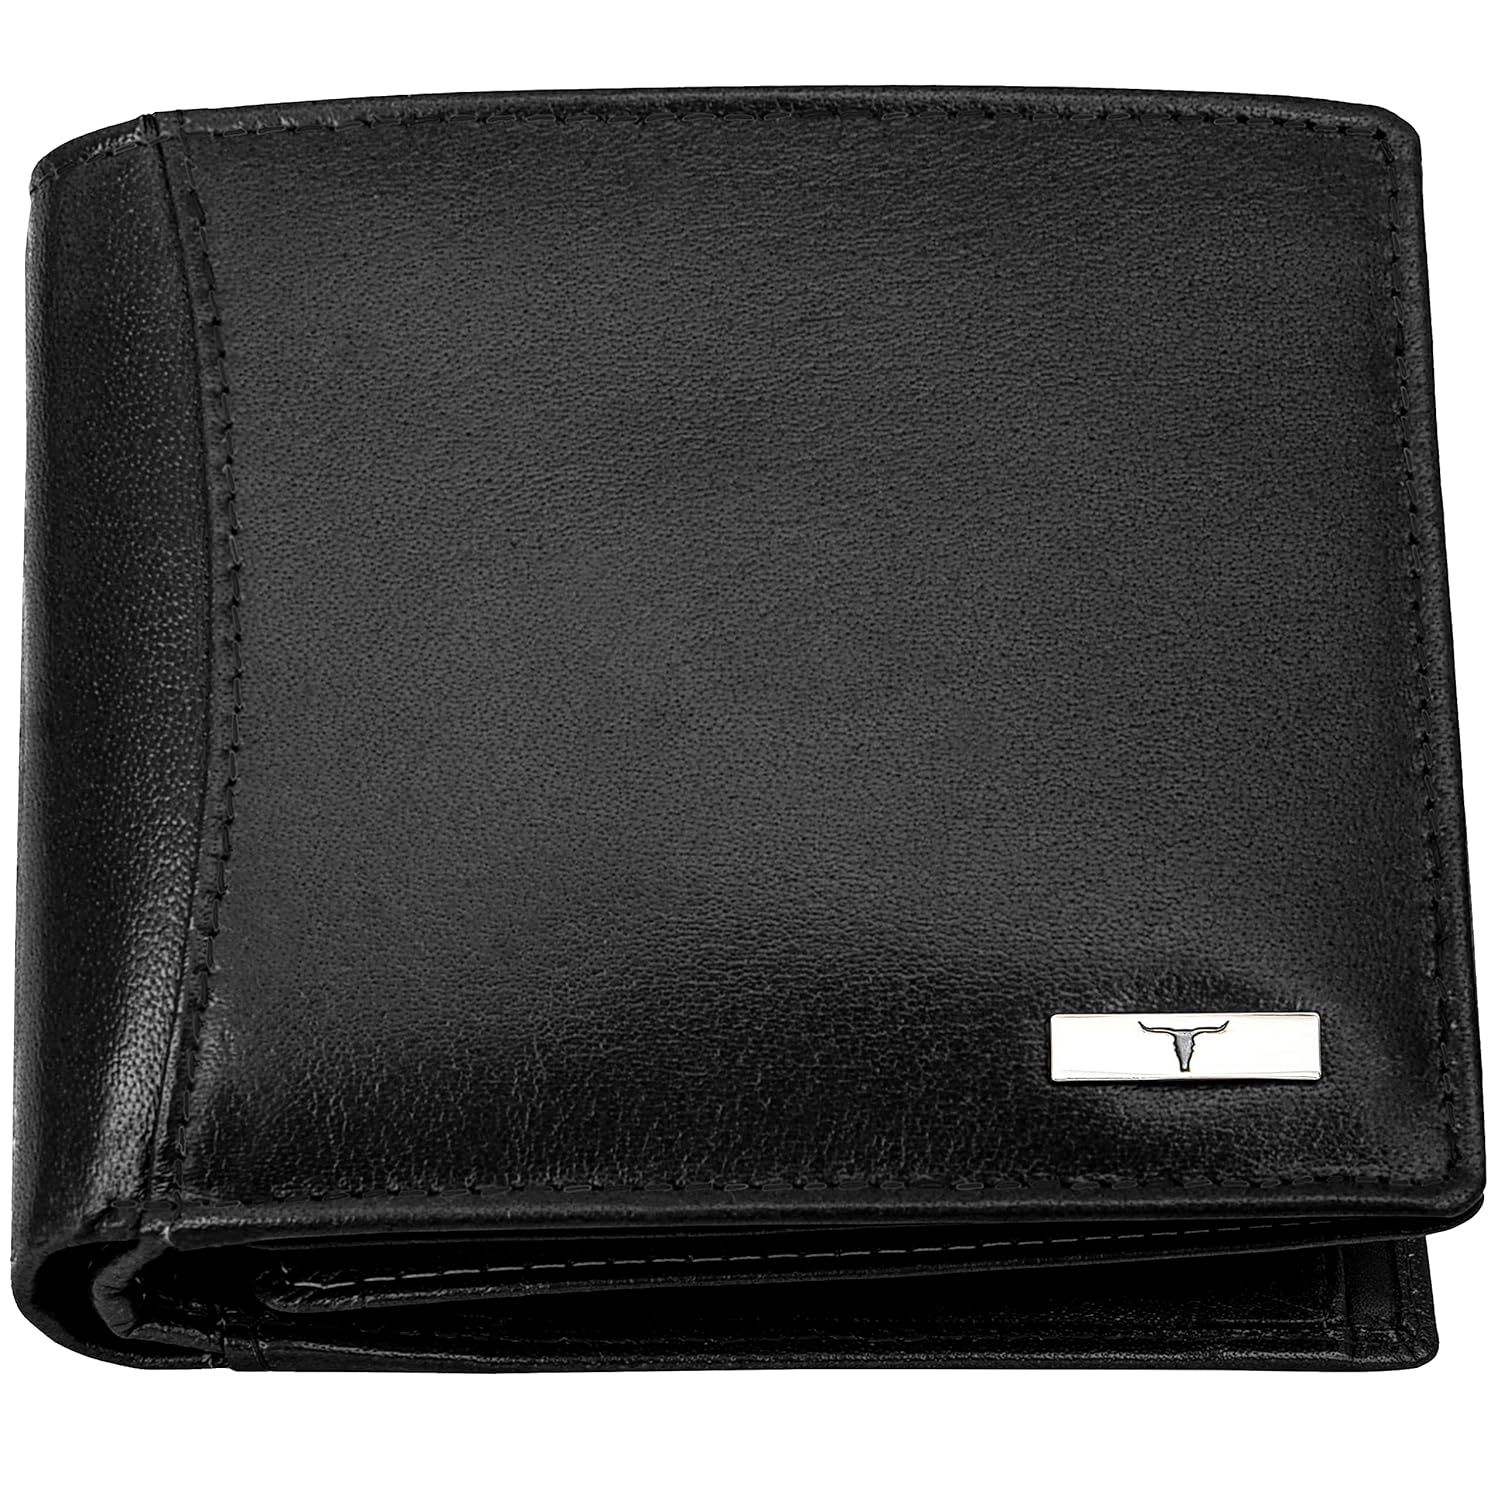 Vintage Goat leather Bags Oliver Aniline Black Leather Wallet for Men